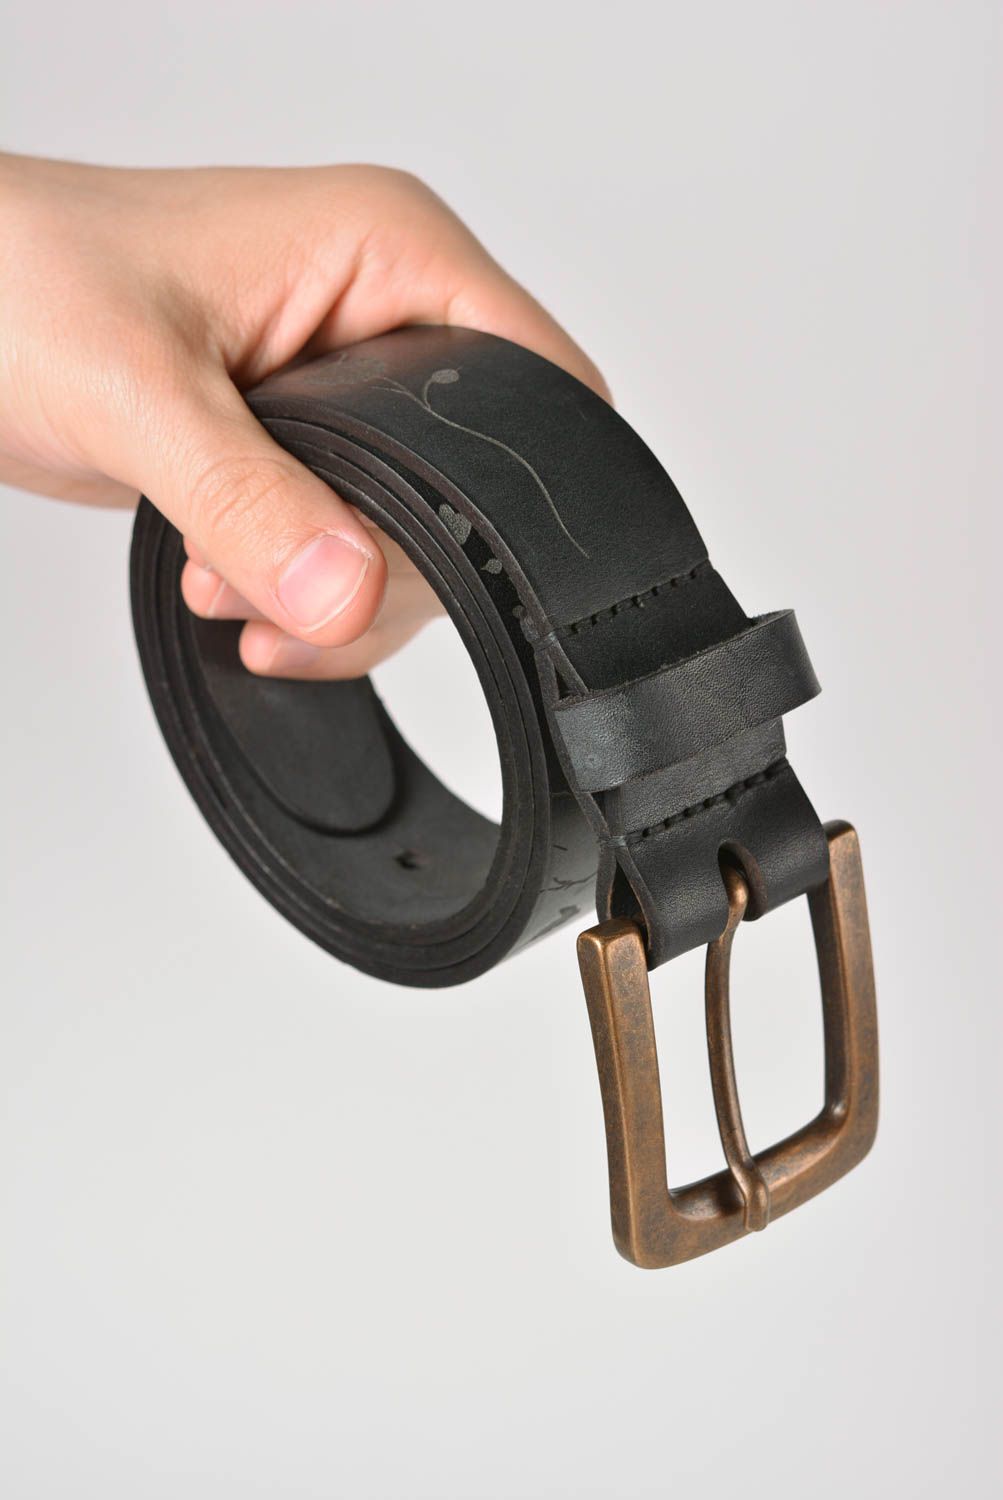 Cinturón de cuero hecho a mano ropa masculina original accesorio de moda foto 4